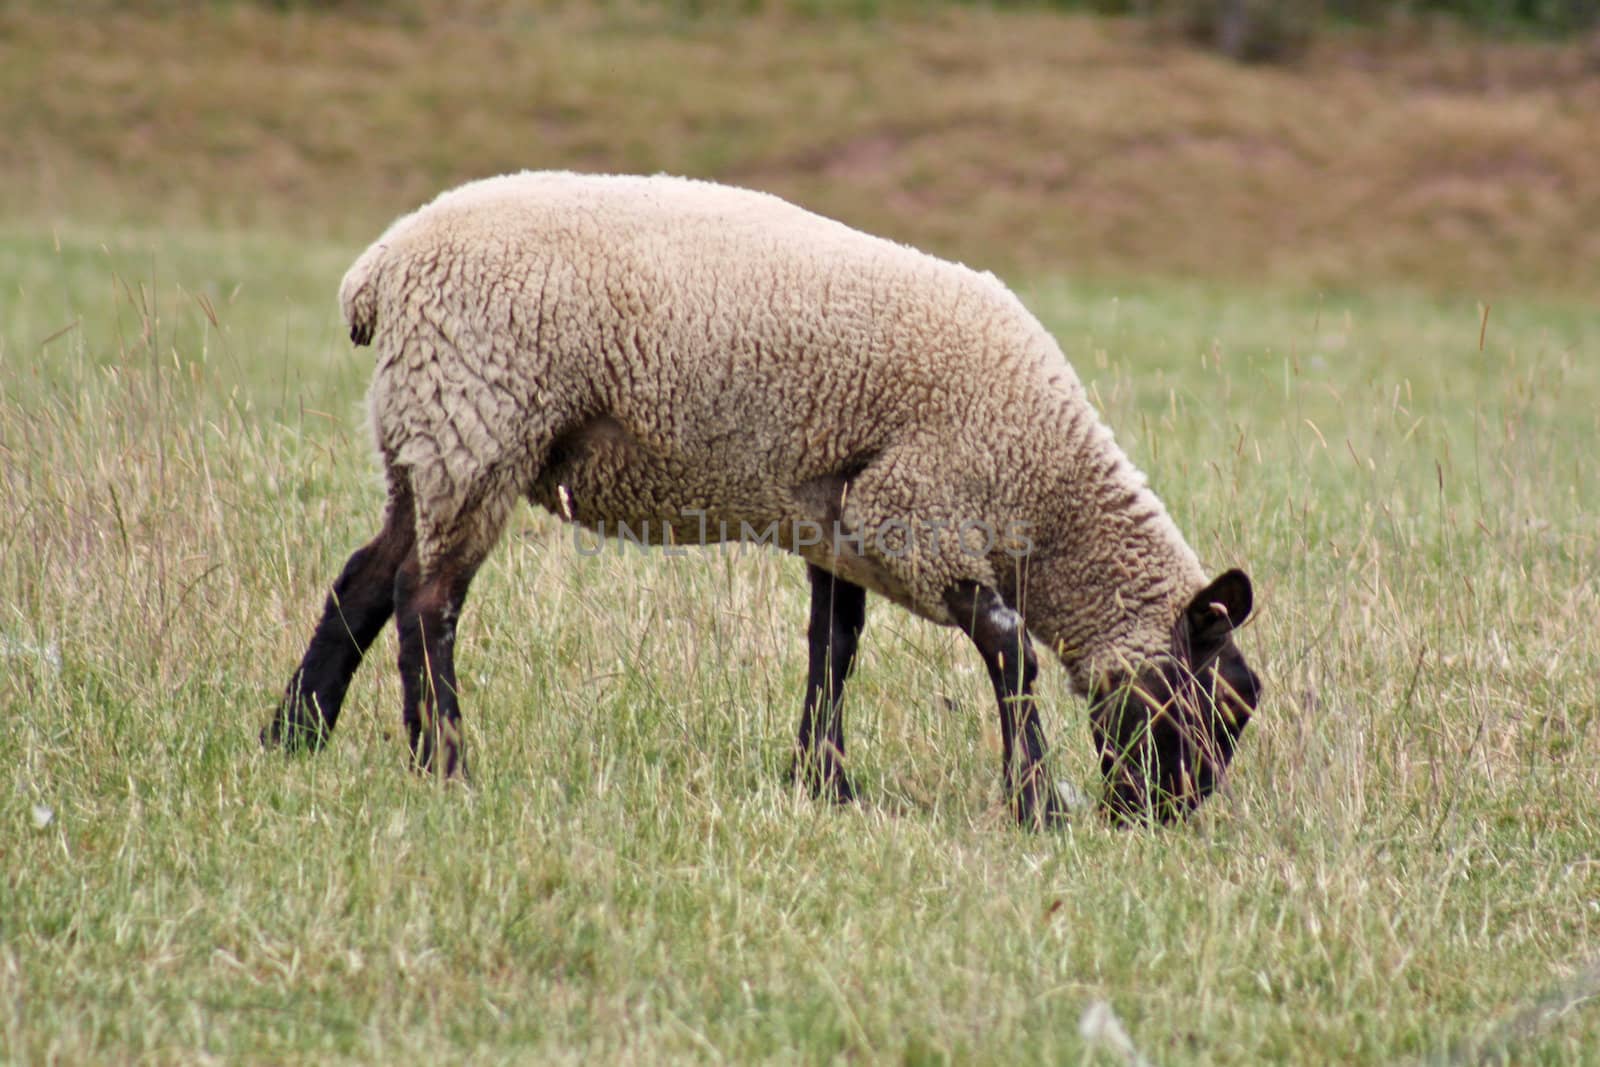 sheep in field by lizapixels